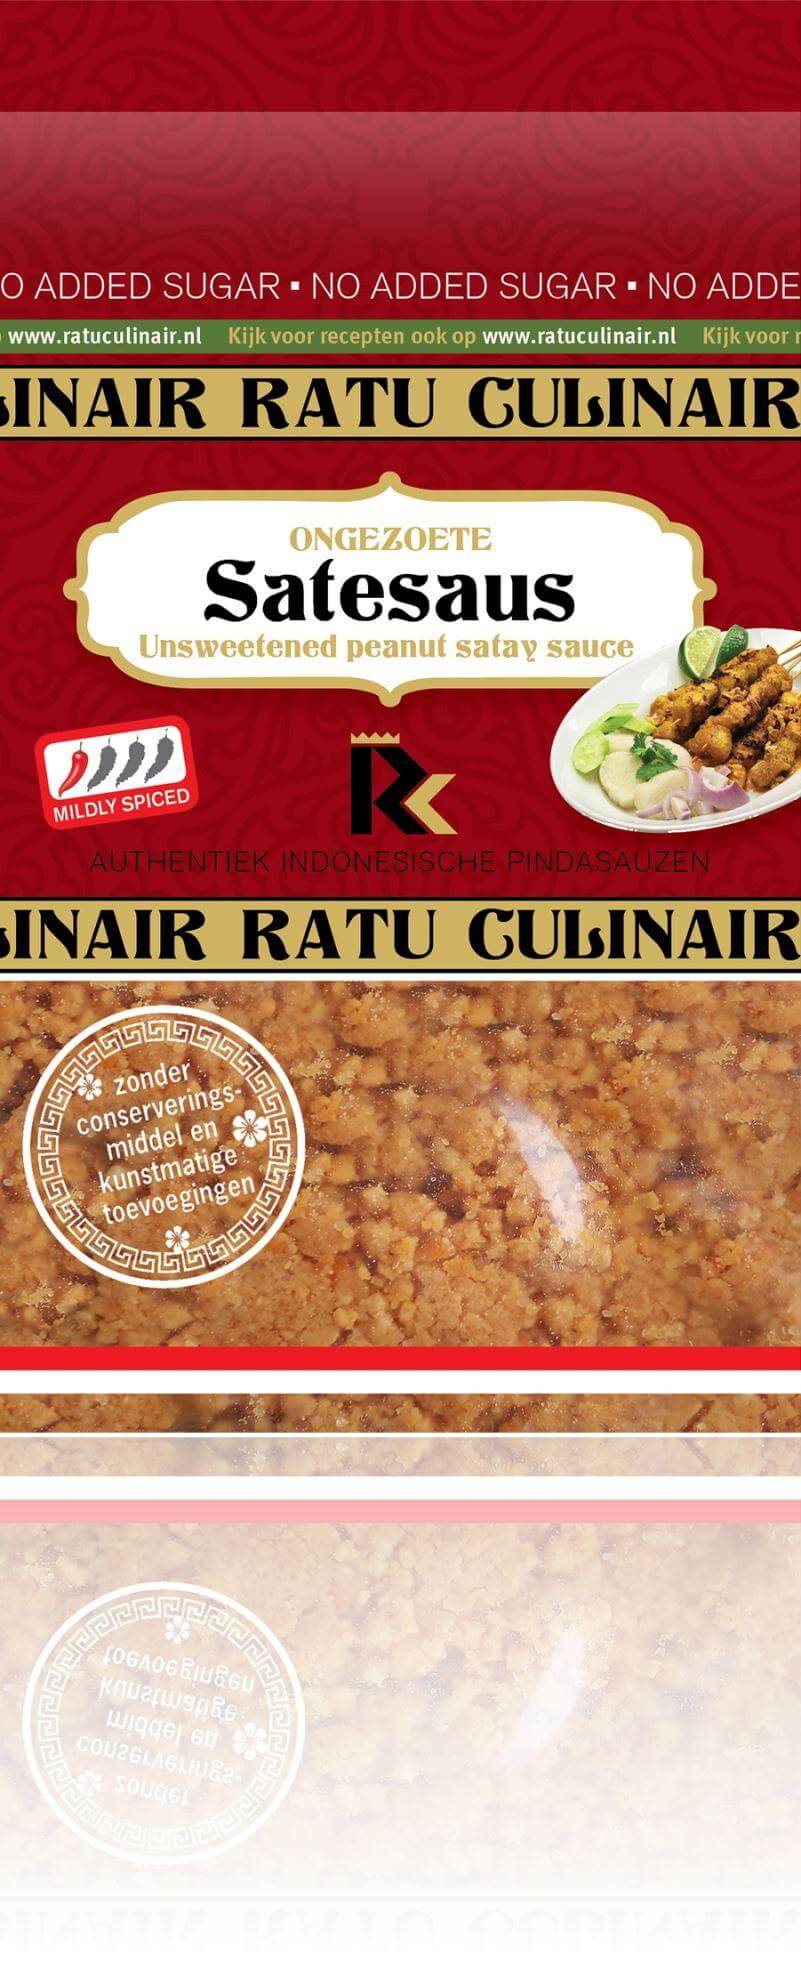 Sat?saus glutenvrij gemaakt door de Indonesische koks van Ratu Culinair in de buurt van Den Bosch